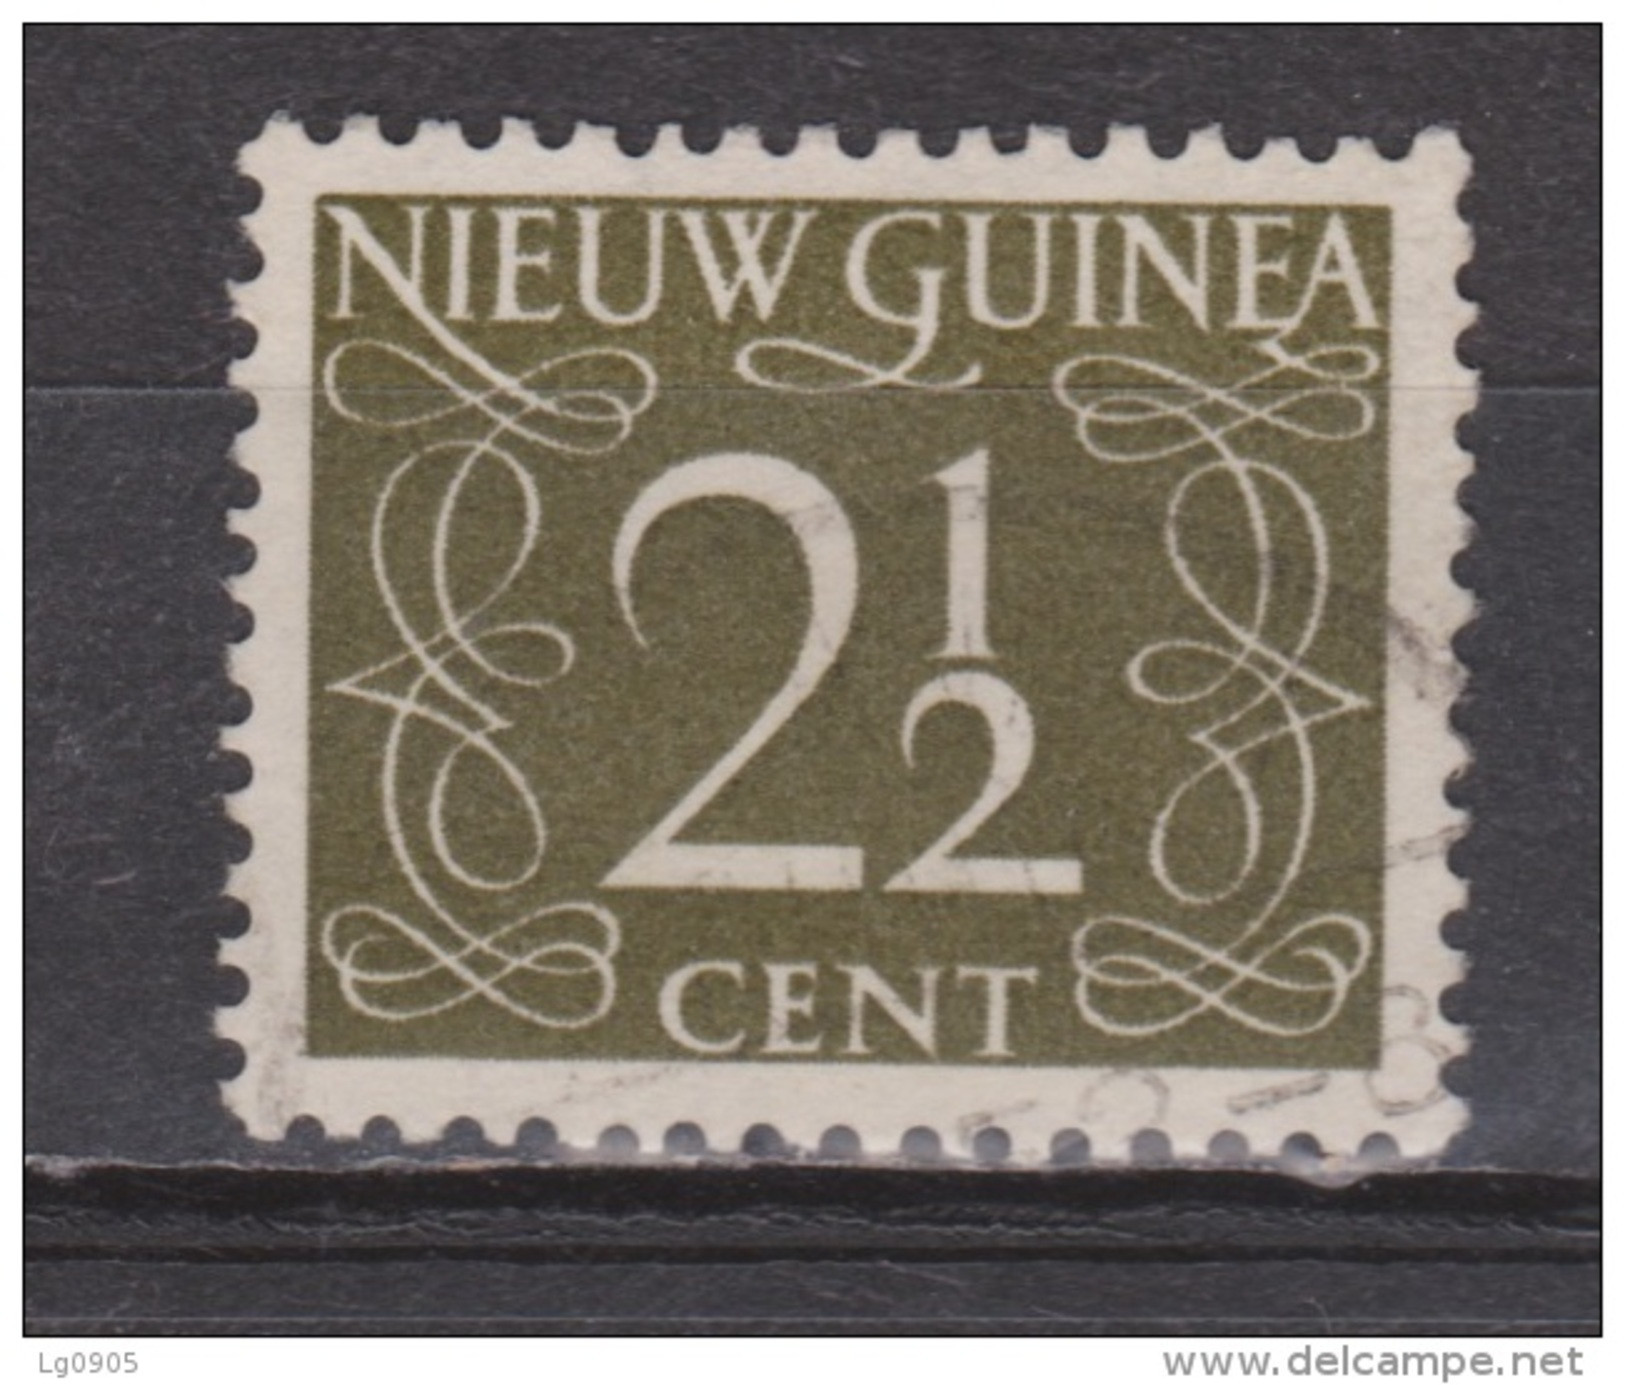 Nederlands Nieuw Guinea 3 Used ; Cijfer 1950 ; NOW ALL STAMPS OF NETHERLANDS NEW GUINEA - Niederländisch-Neuguinea